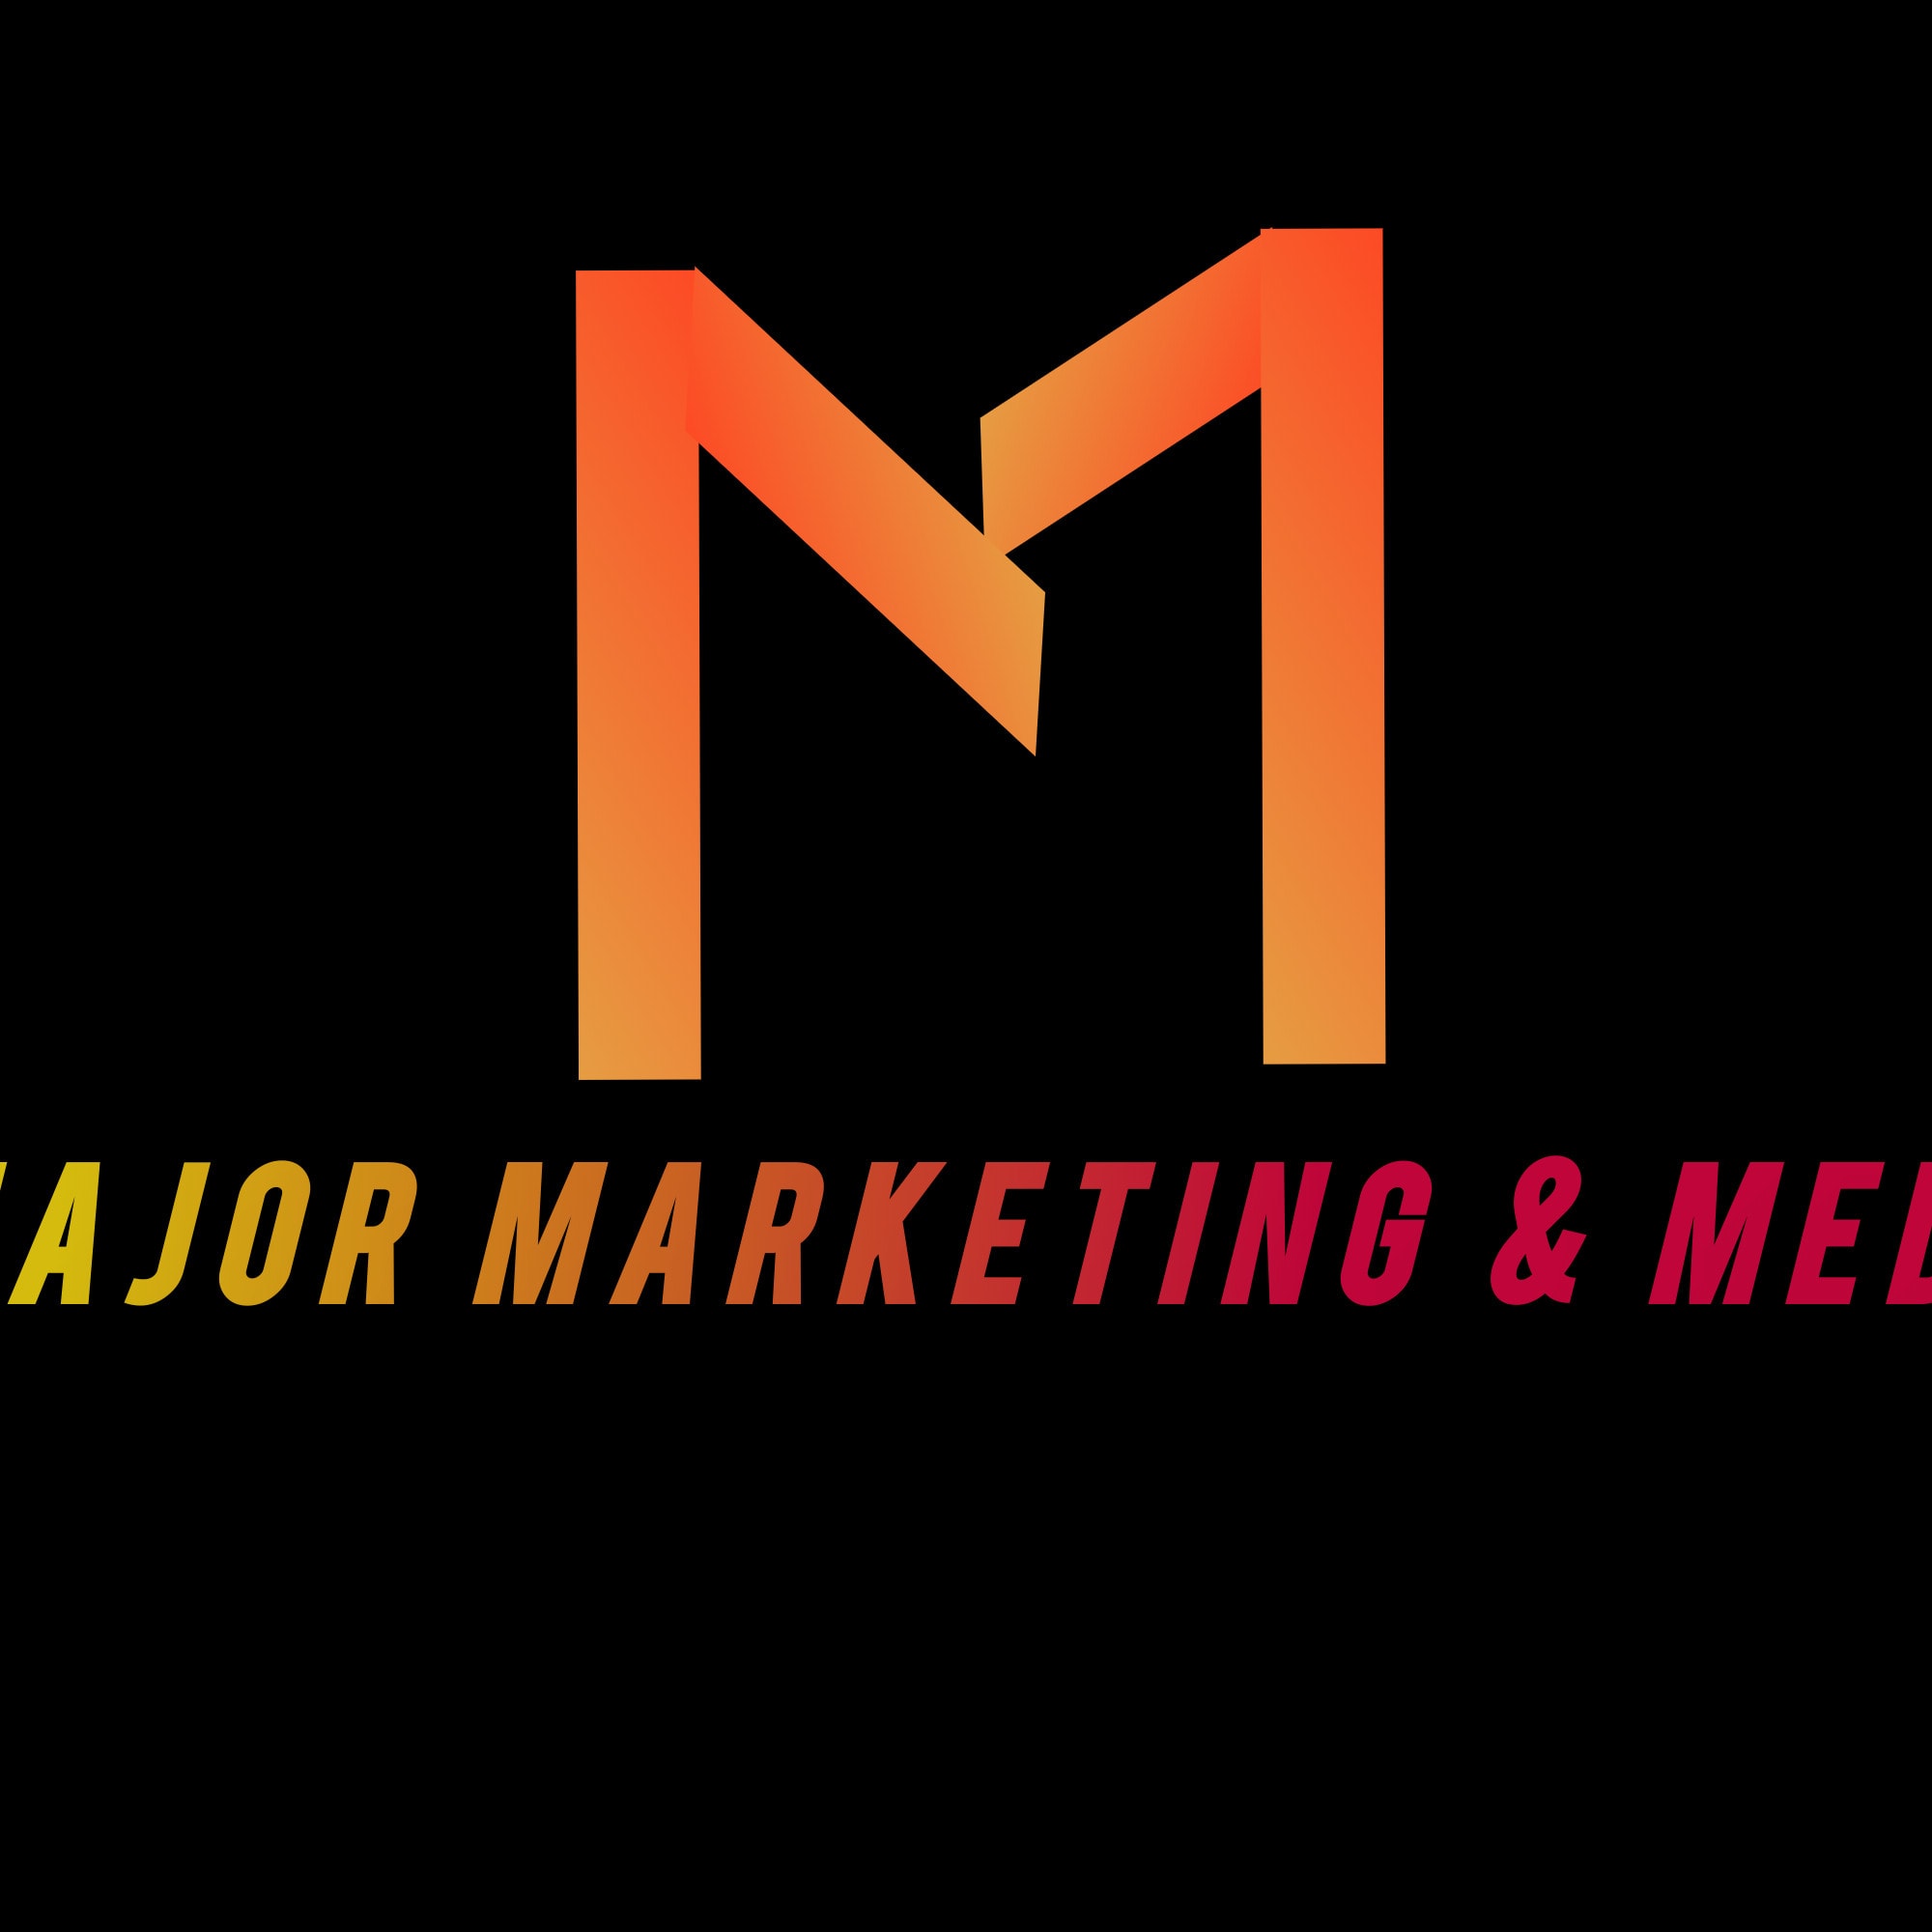 Major Marketing & Media